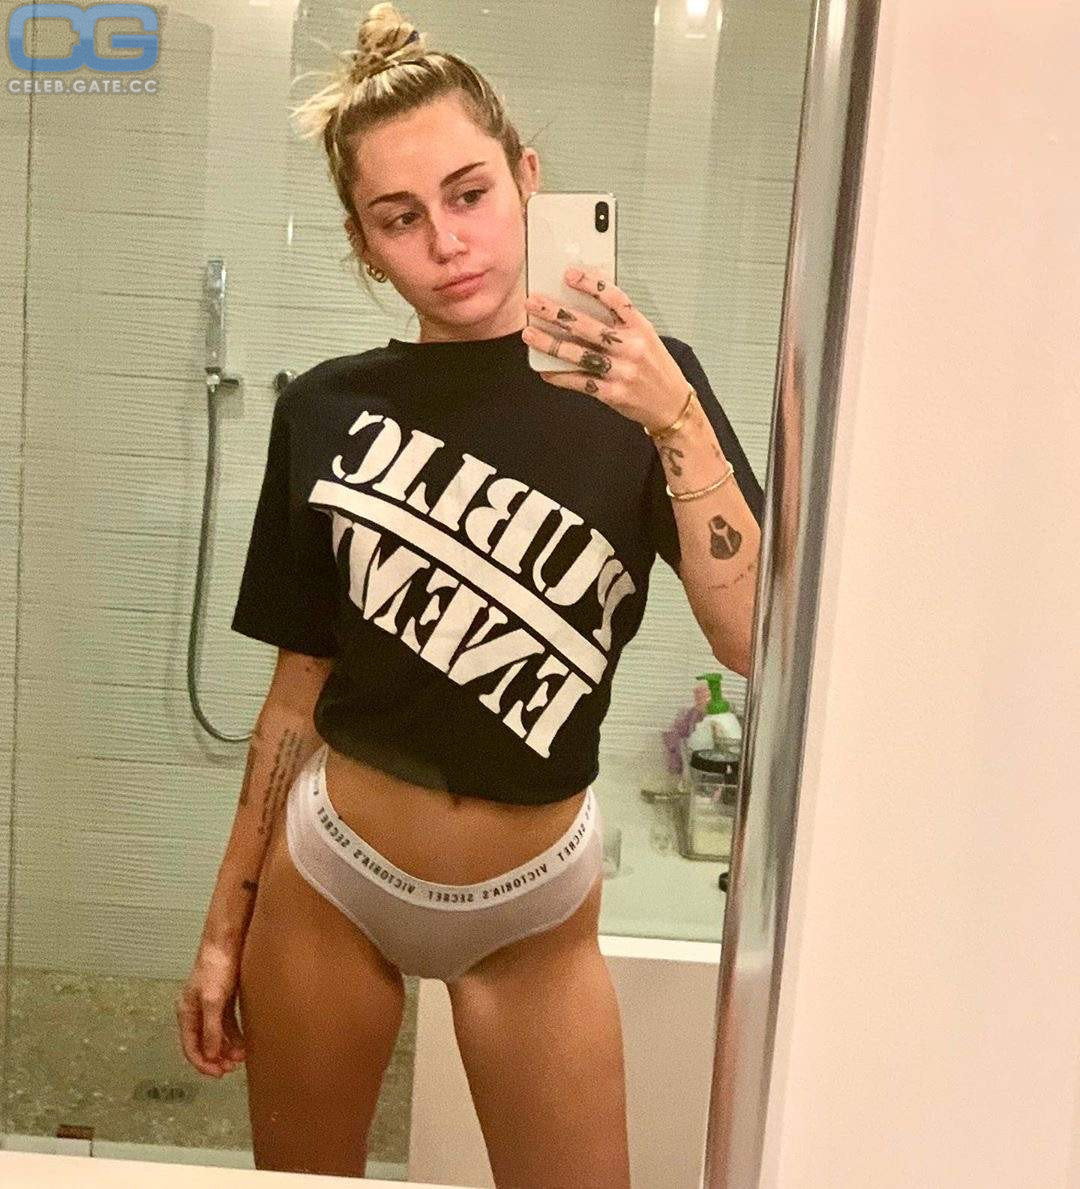 Miley cyrus nude playboy